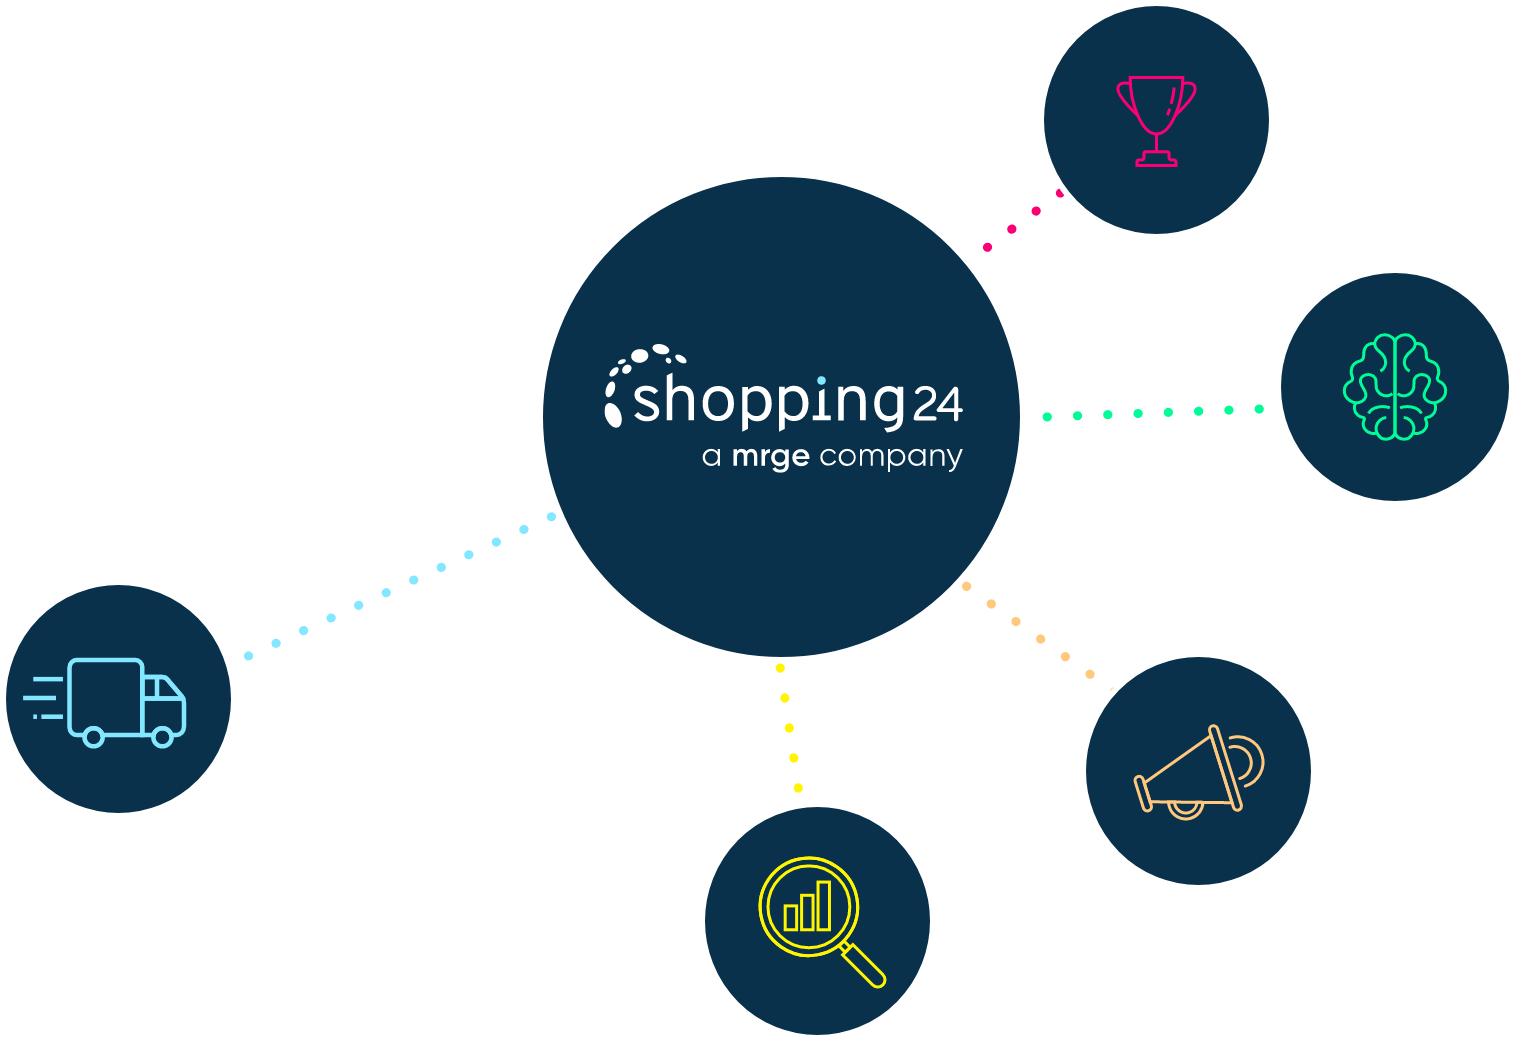 Visualisierung des shopping24 commerce networks mit den unterschiedlichen Geschäftsbereichen.